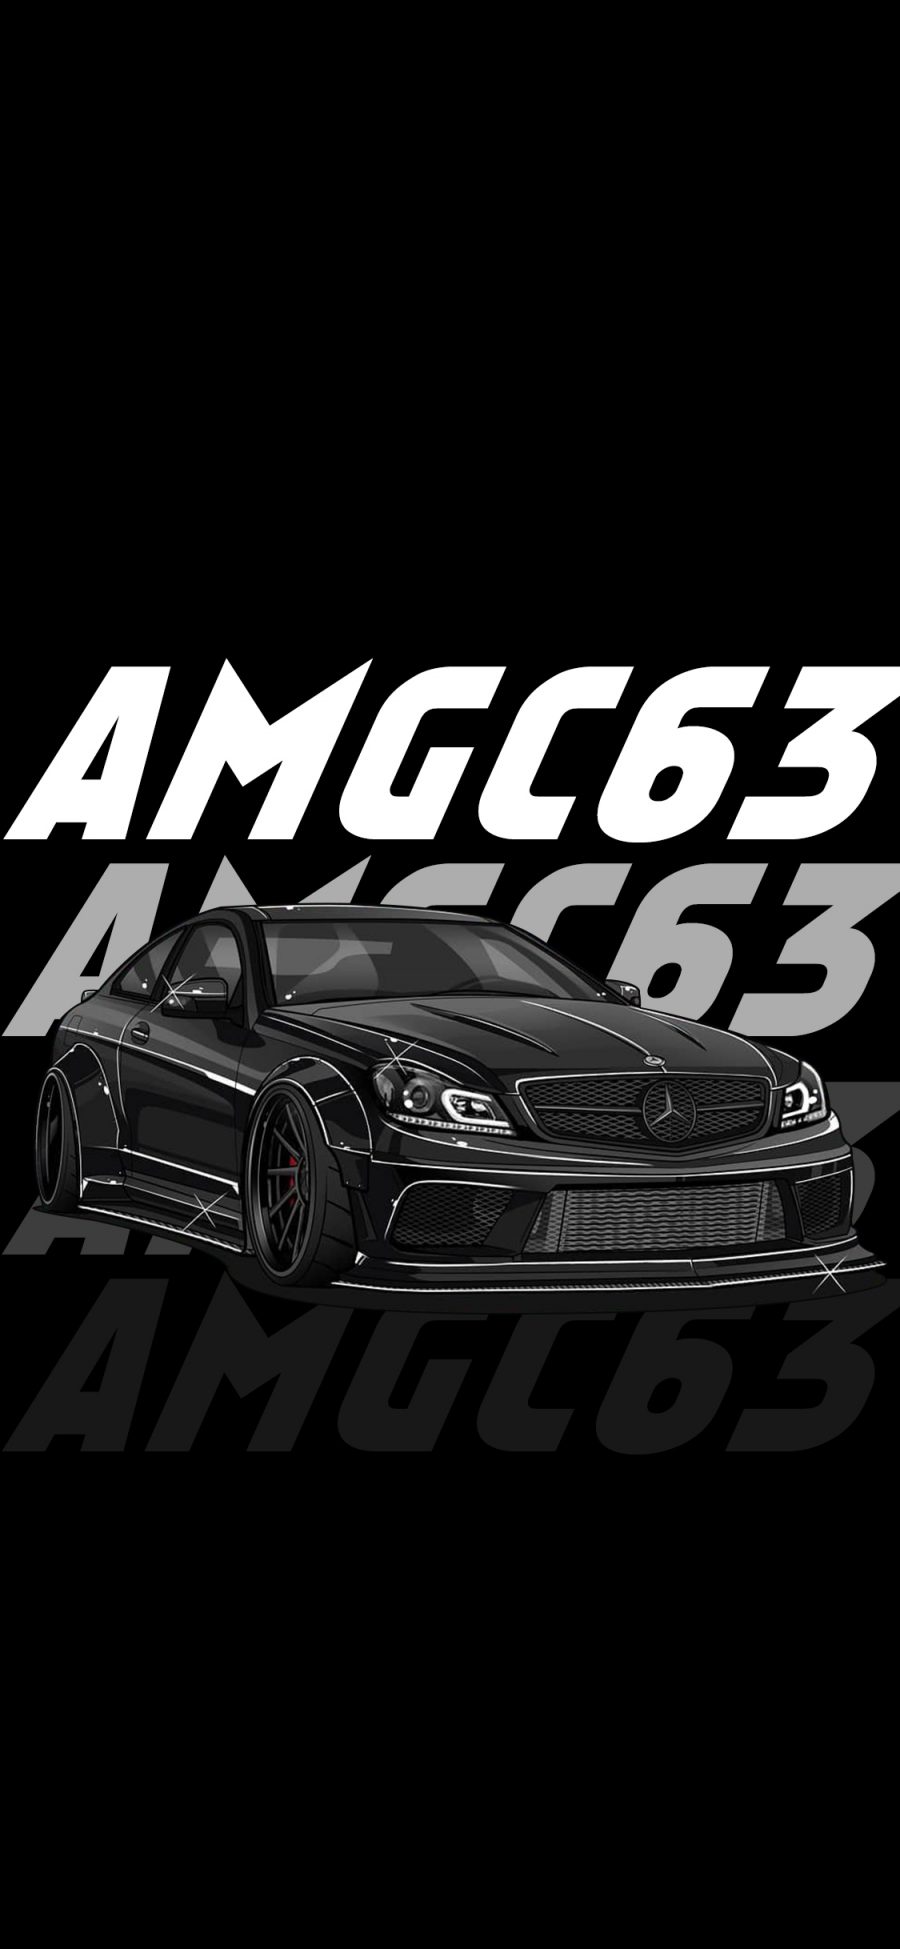 [2436×1125]插图 奔驰AMG 豪车 黑色 苹果手机动漫壁纸图片